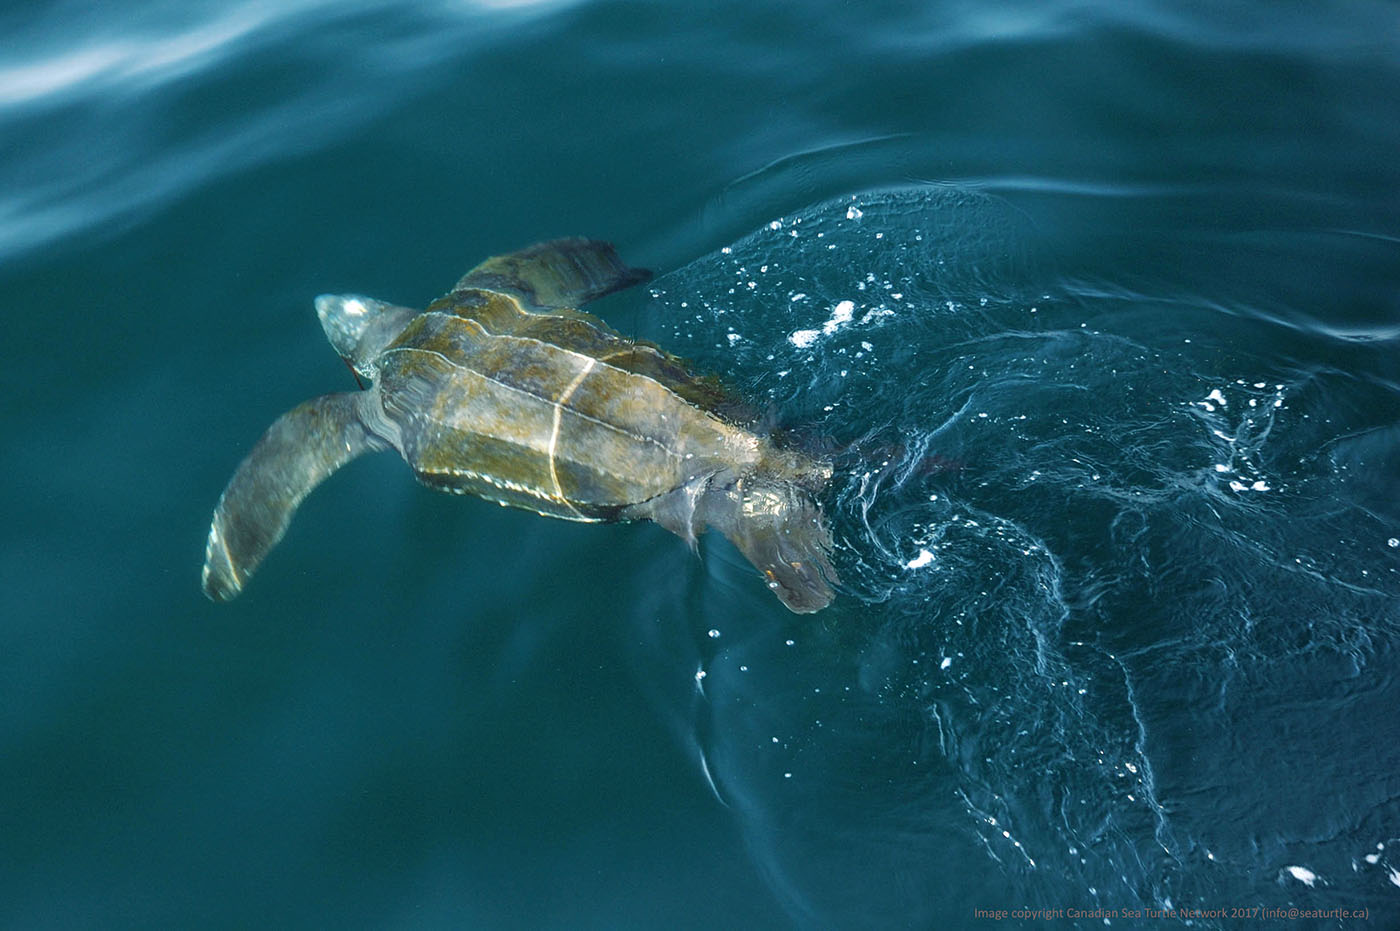 Tortue luth nageant près de la surface de l’océan. Photo : Canadian Sea Turtle Network.